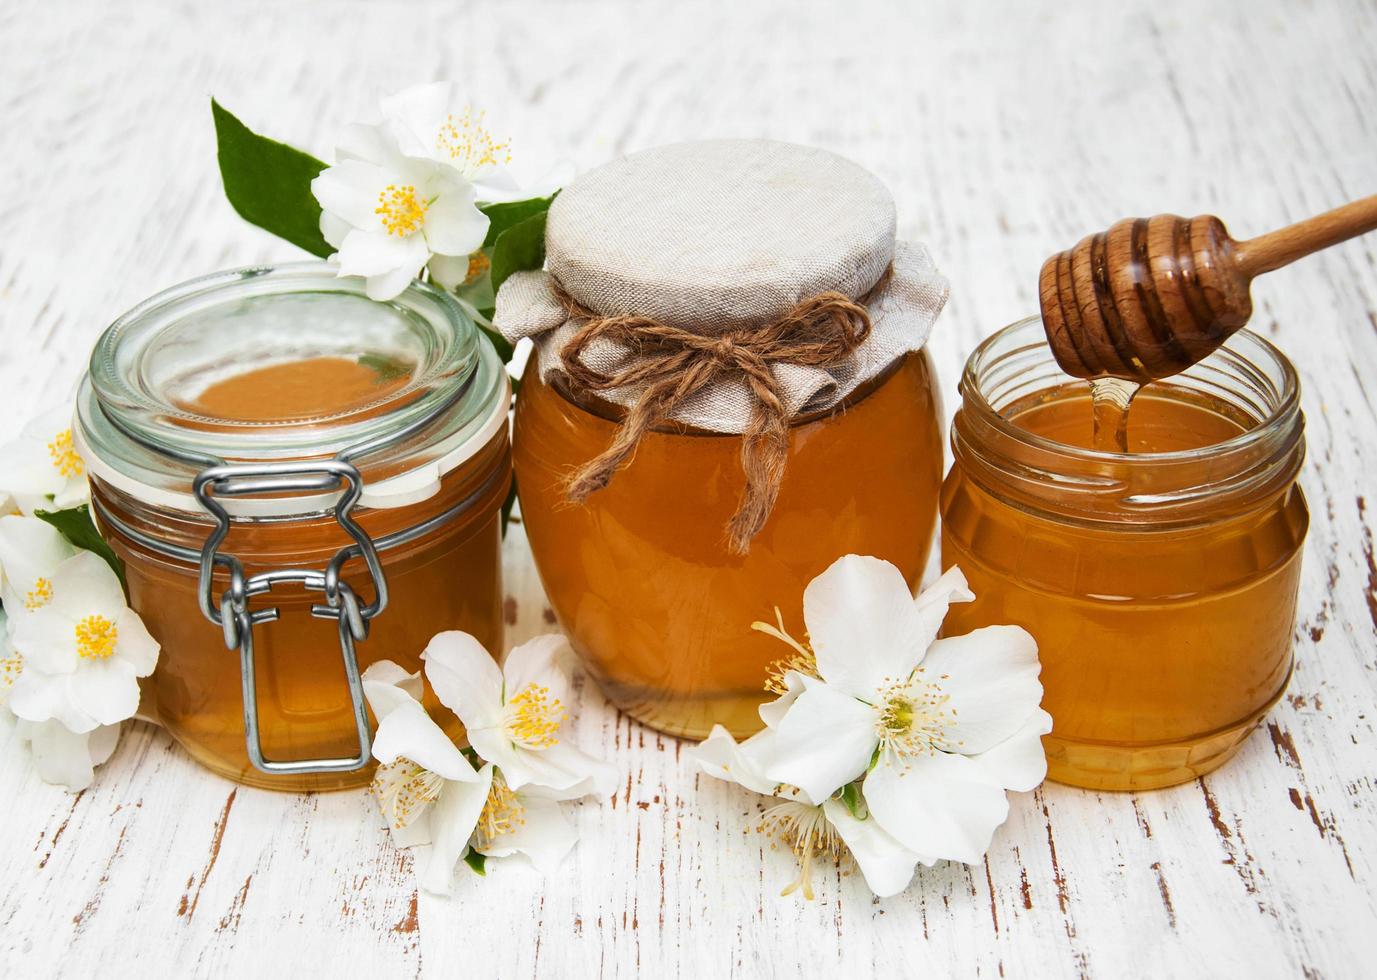 Honig mit Jasminblüten auf einem hölzernen Hintergrund foto